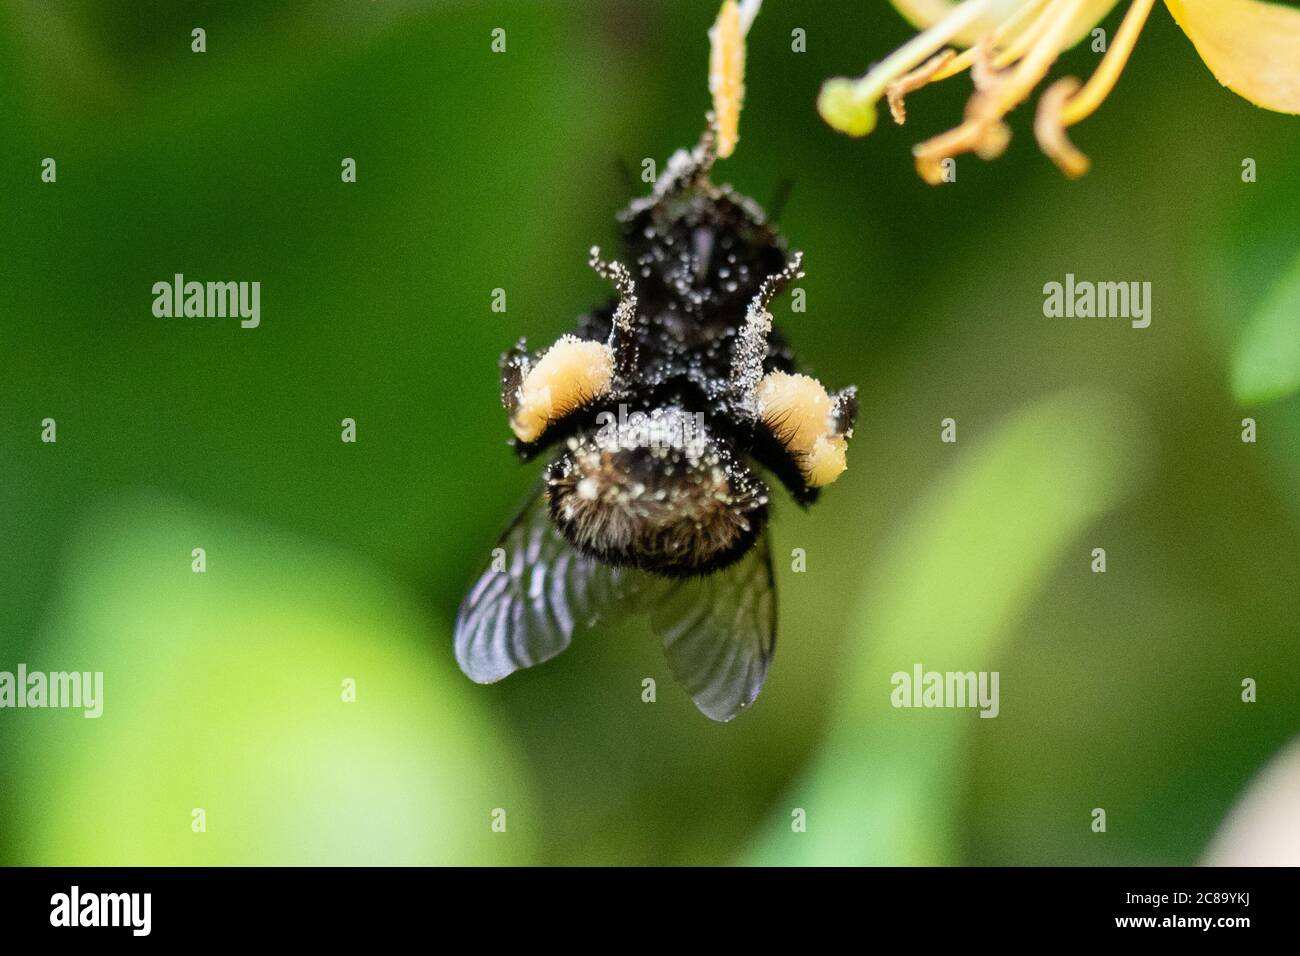 Nahaufnahme von Pollenkörben auf einer Hummel, die vom Geißblatt baumelt Blume, wie es sammelt Pollen in die Säcke aus der Haare auf dem Körper - Großbritannien Stockfoto